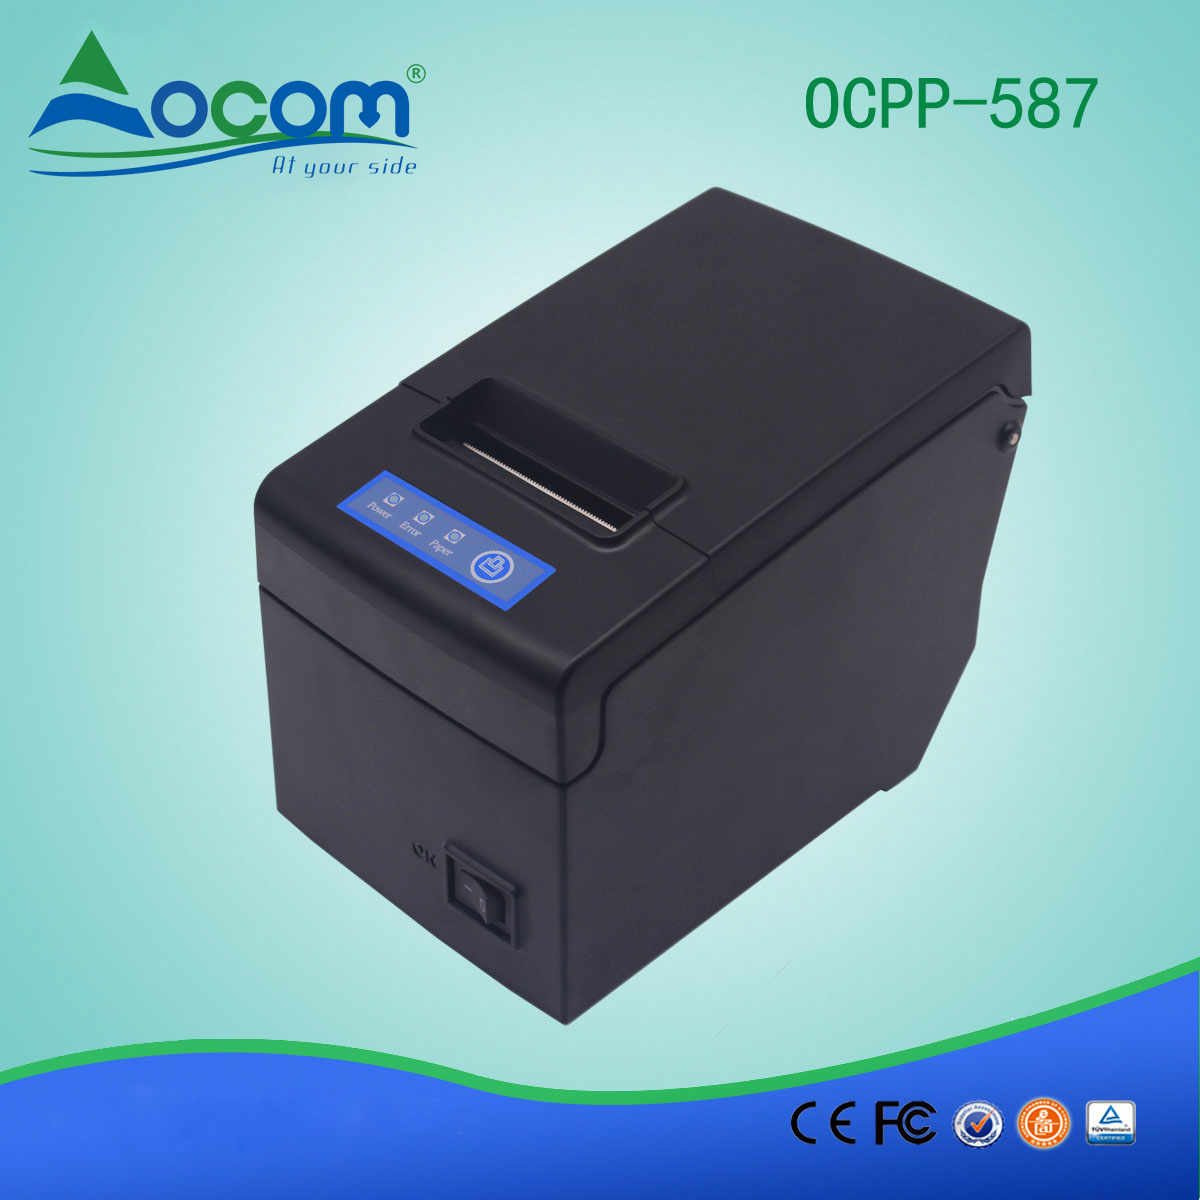 Stampante per ricevute termica da 58mm con supporto per carta grande OCPP-587-UW Comunicazione USB + WIFI